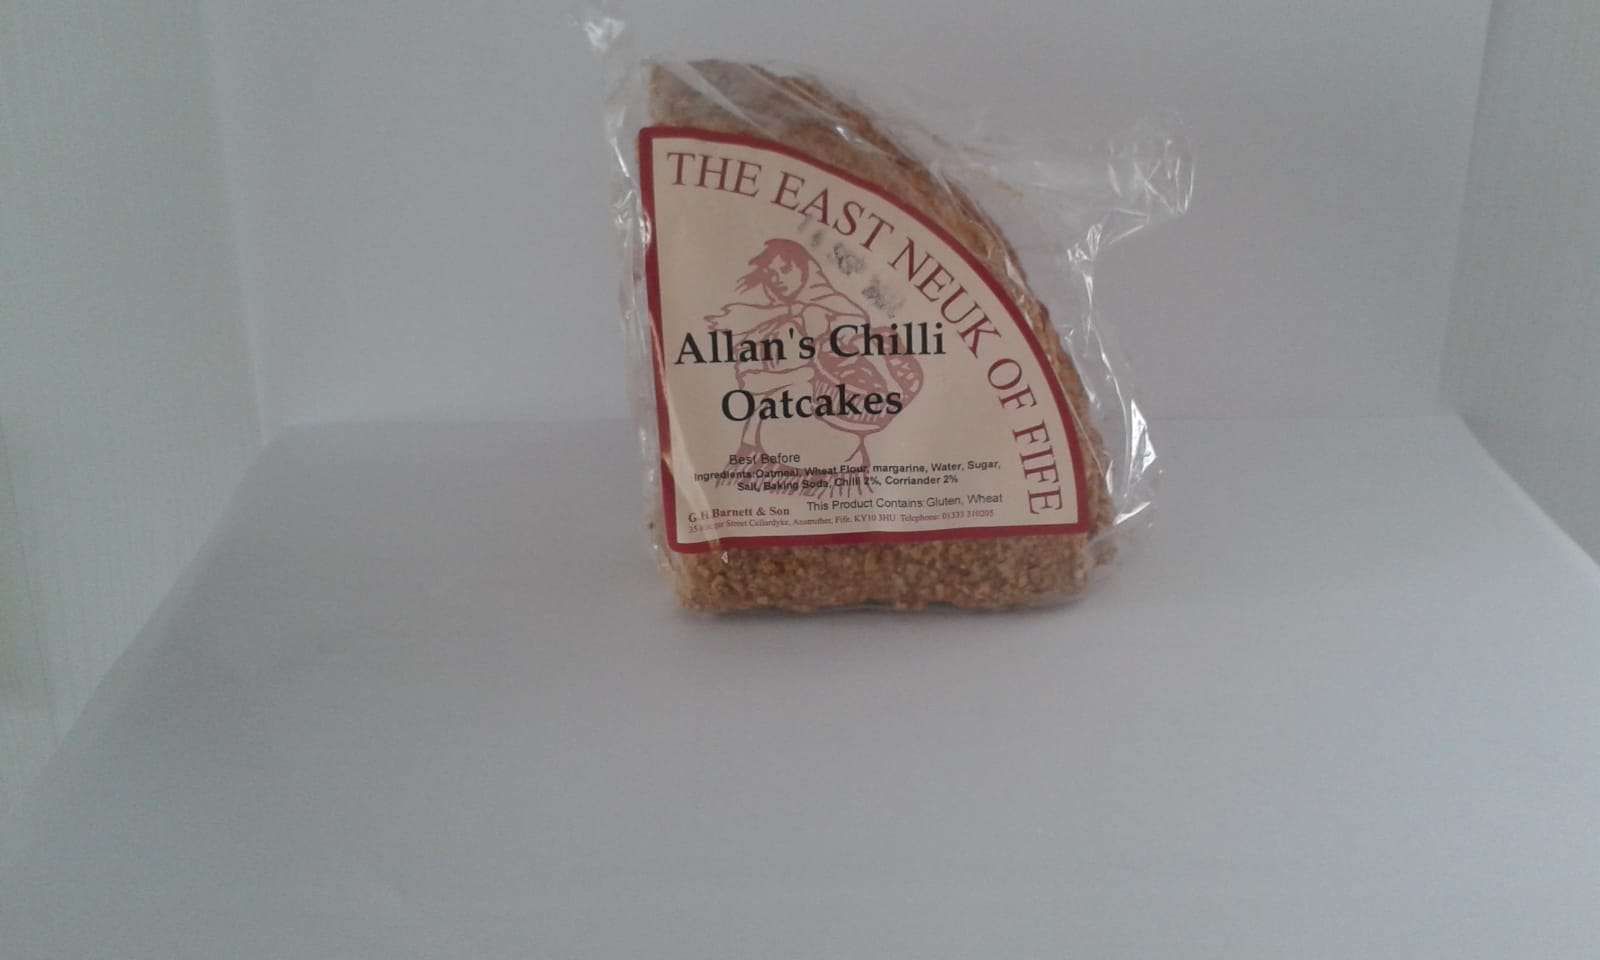 Allan's Chilli Oatcakes